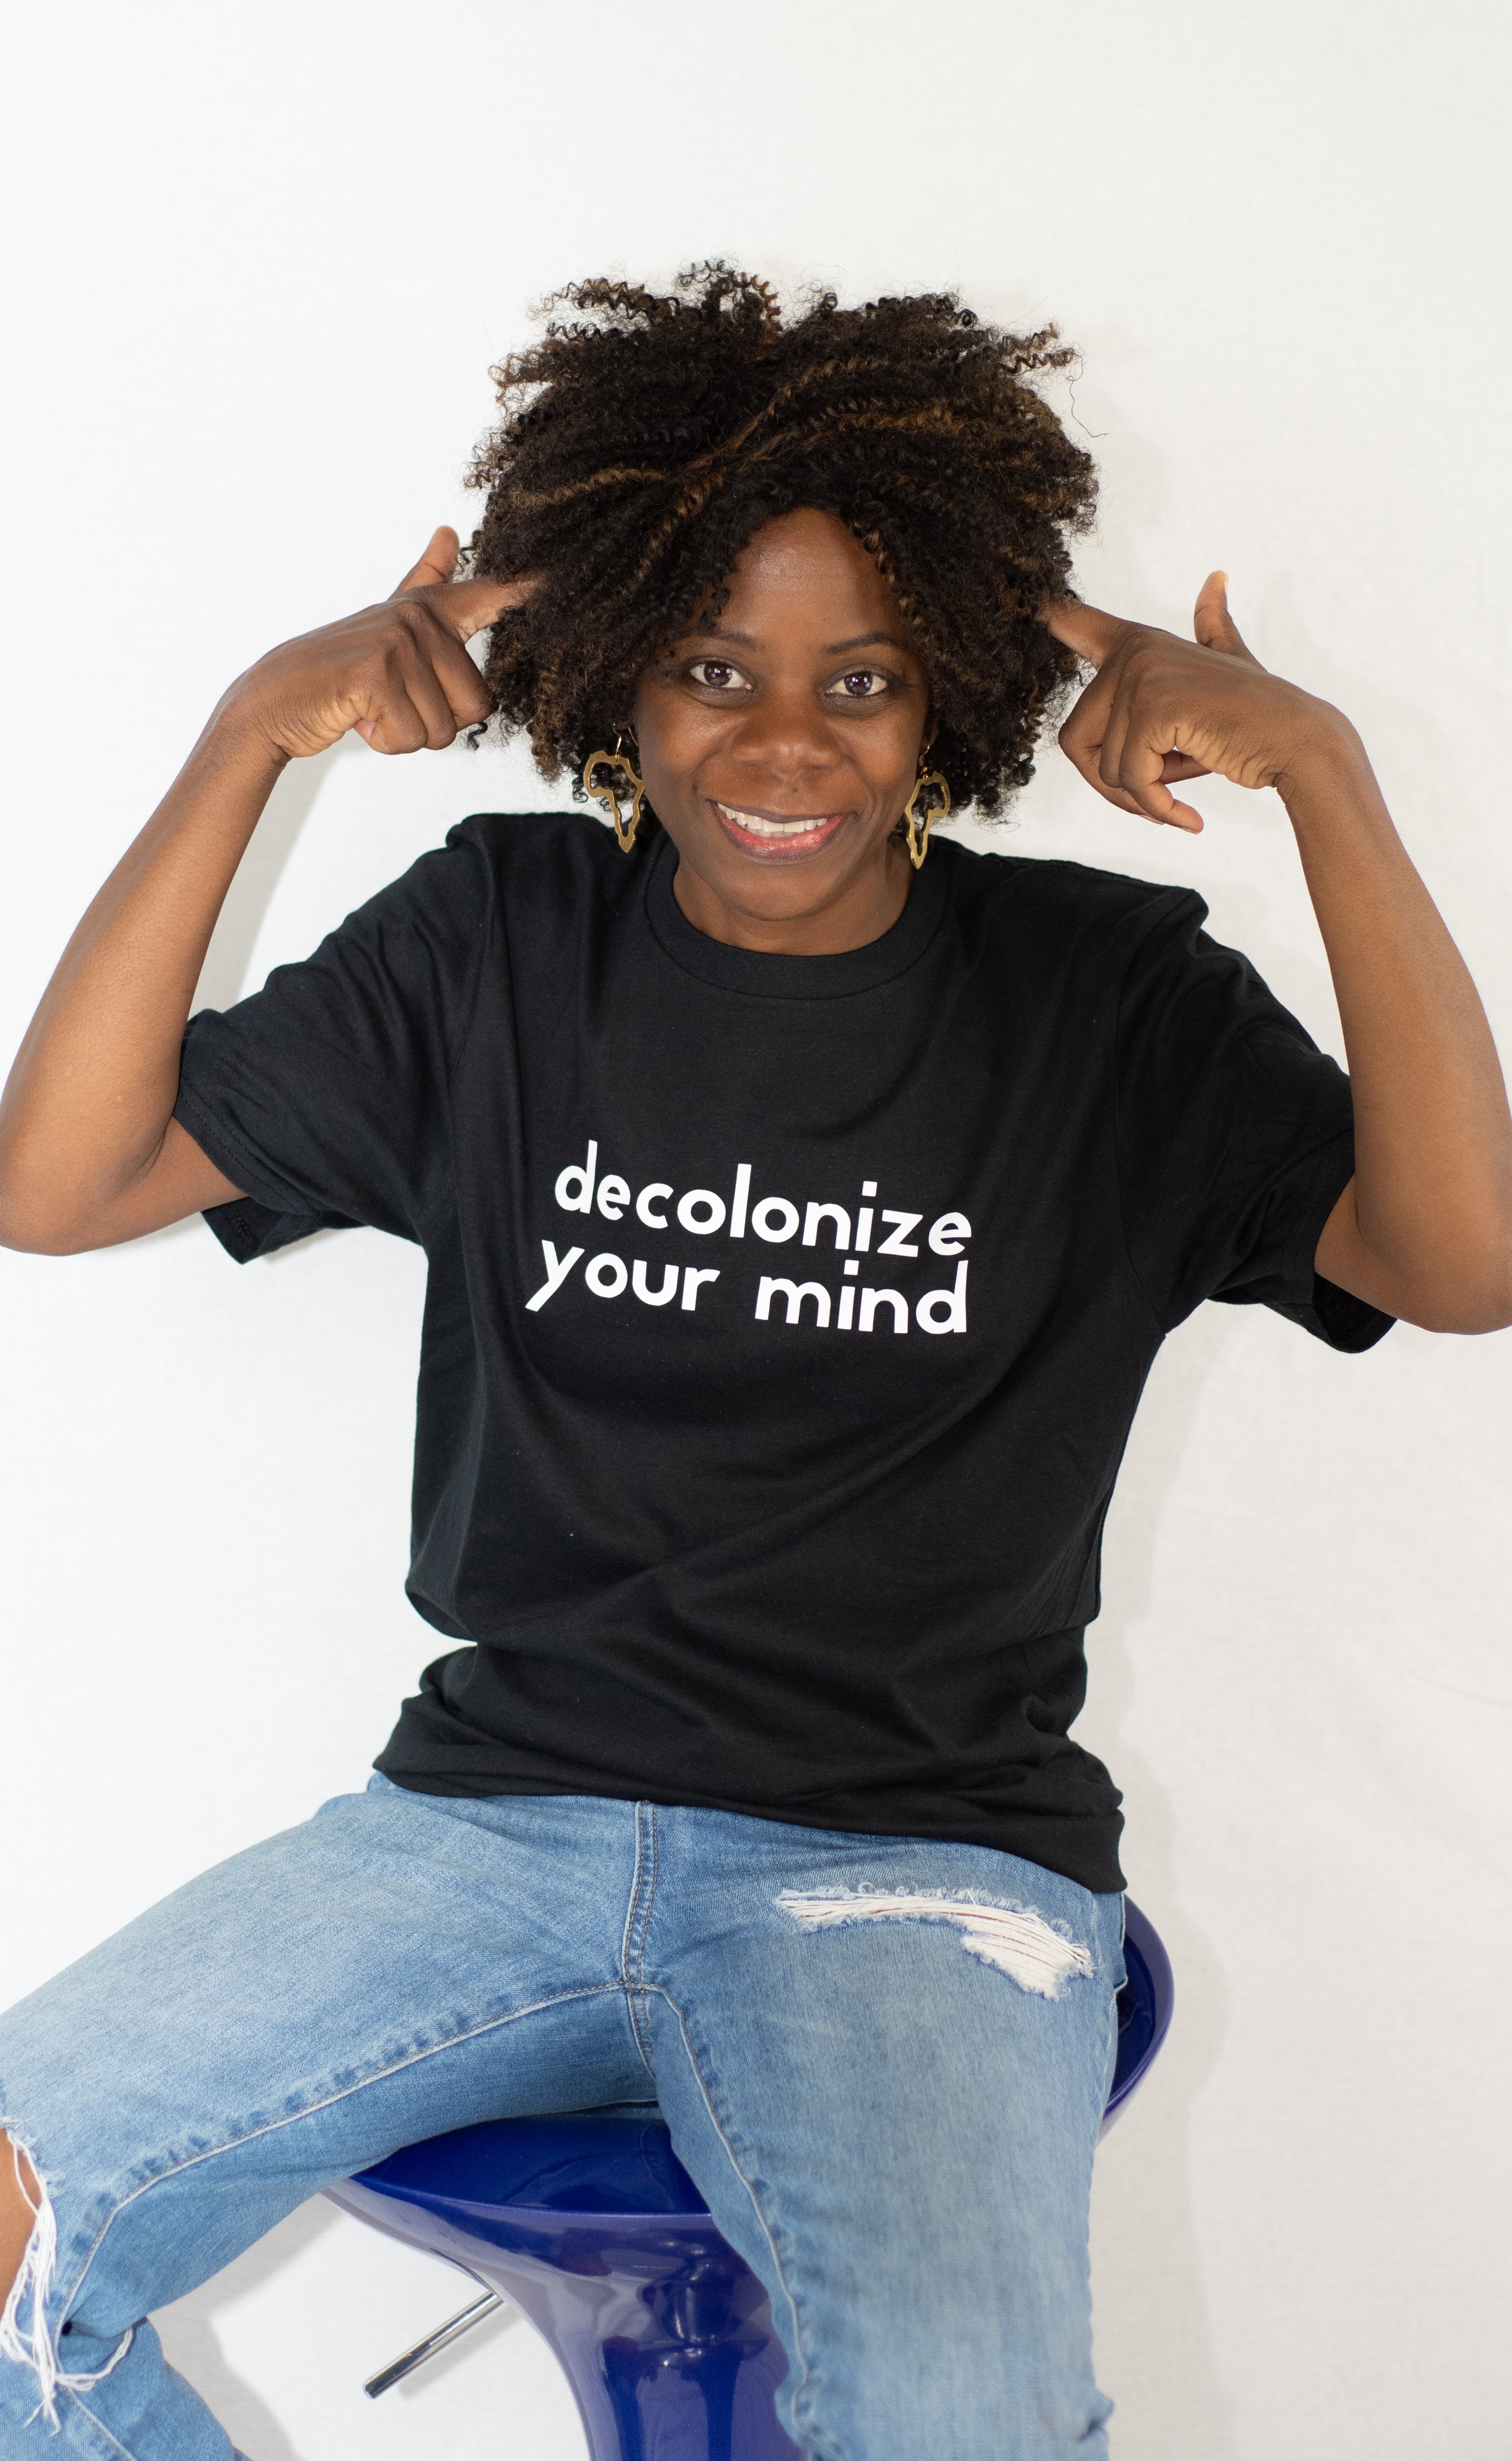 Decolonize Your Mind T-shirt